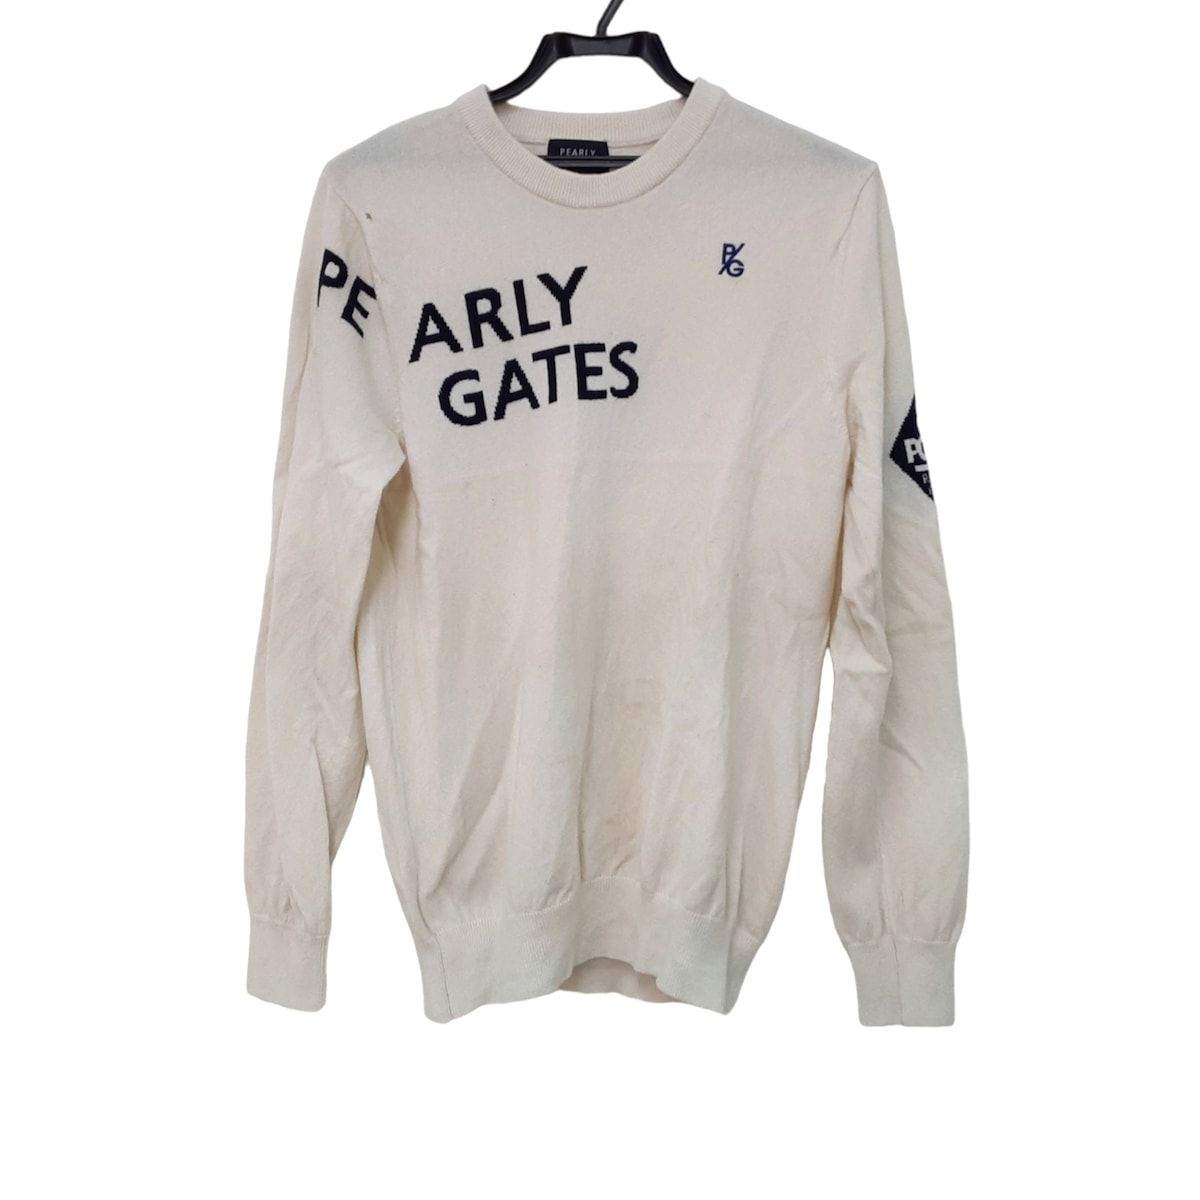 PEARLY GATES(パーリーゲイツ) 長袖セーター サイズ4 XL メンズ